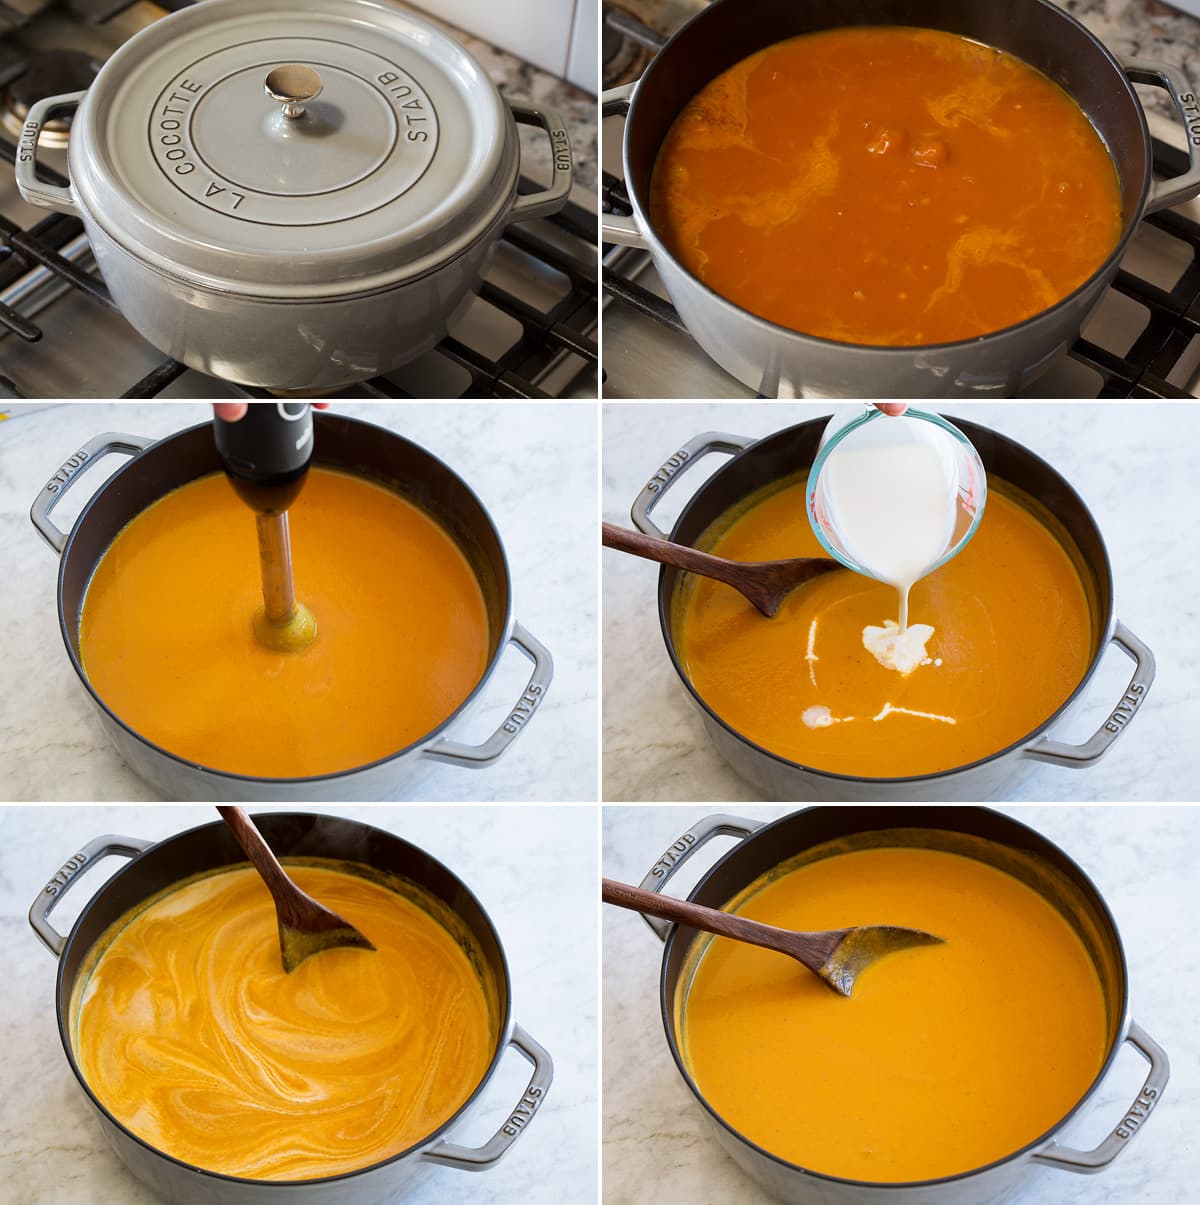 Sei foto che mostrano la zuppa che viene fatta bollire a fuoco lento, poi passata con un frullatore a immersione, quindi incorporata la panna.